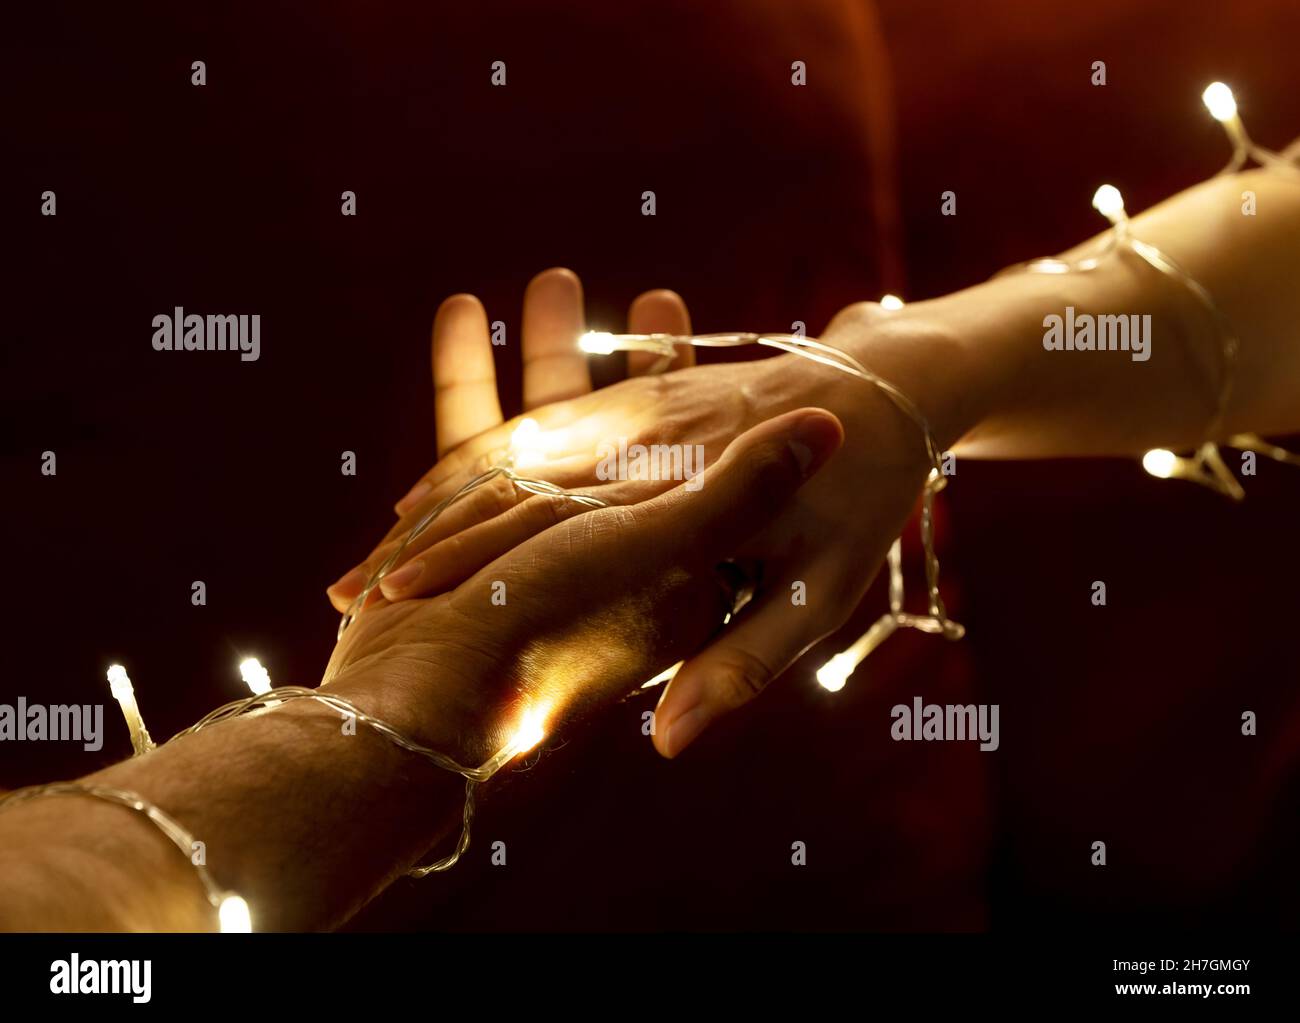 Les deux mains se tenant sous la main couverte de lumières à DEL.Concept de datation et d'amour. Banque D'Images